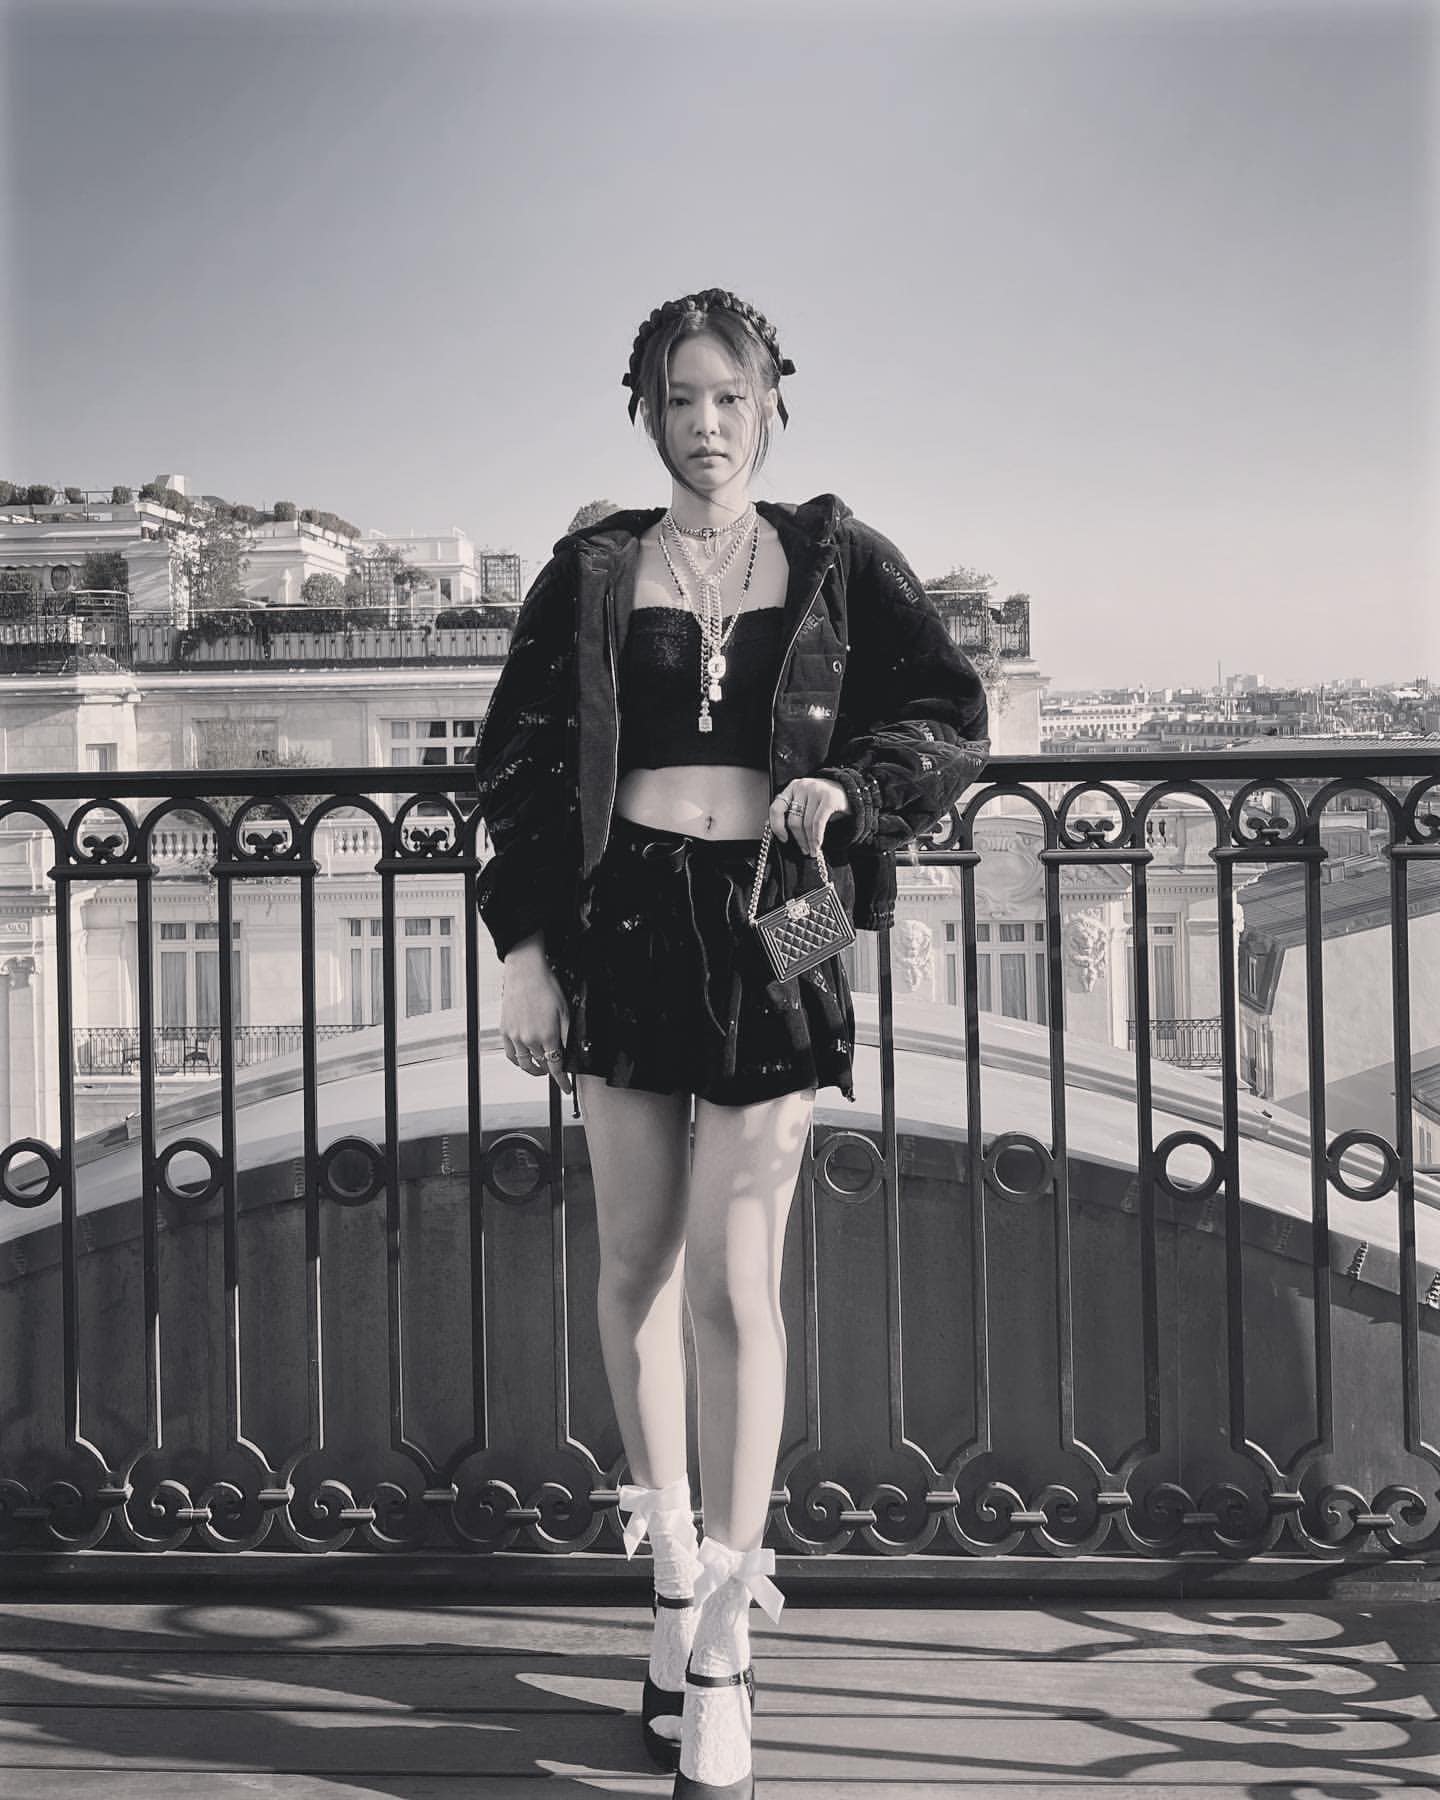 Hãy cùng khám phá hình ảnh Jennie, thành viên của nhóm nhạc nổi tiếng BlackPink, đến khám phá thành phố tình yêu Paris tuyệt đẹp qua góc nhìn chiêm ngưỡng cảnh quan và văn hóa đặc trưng.